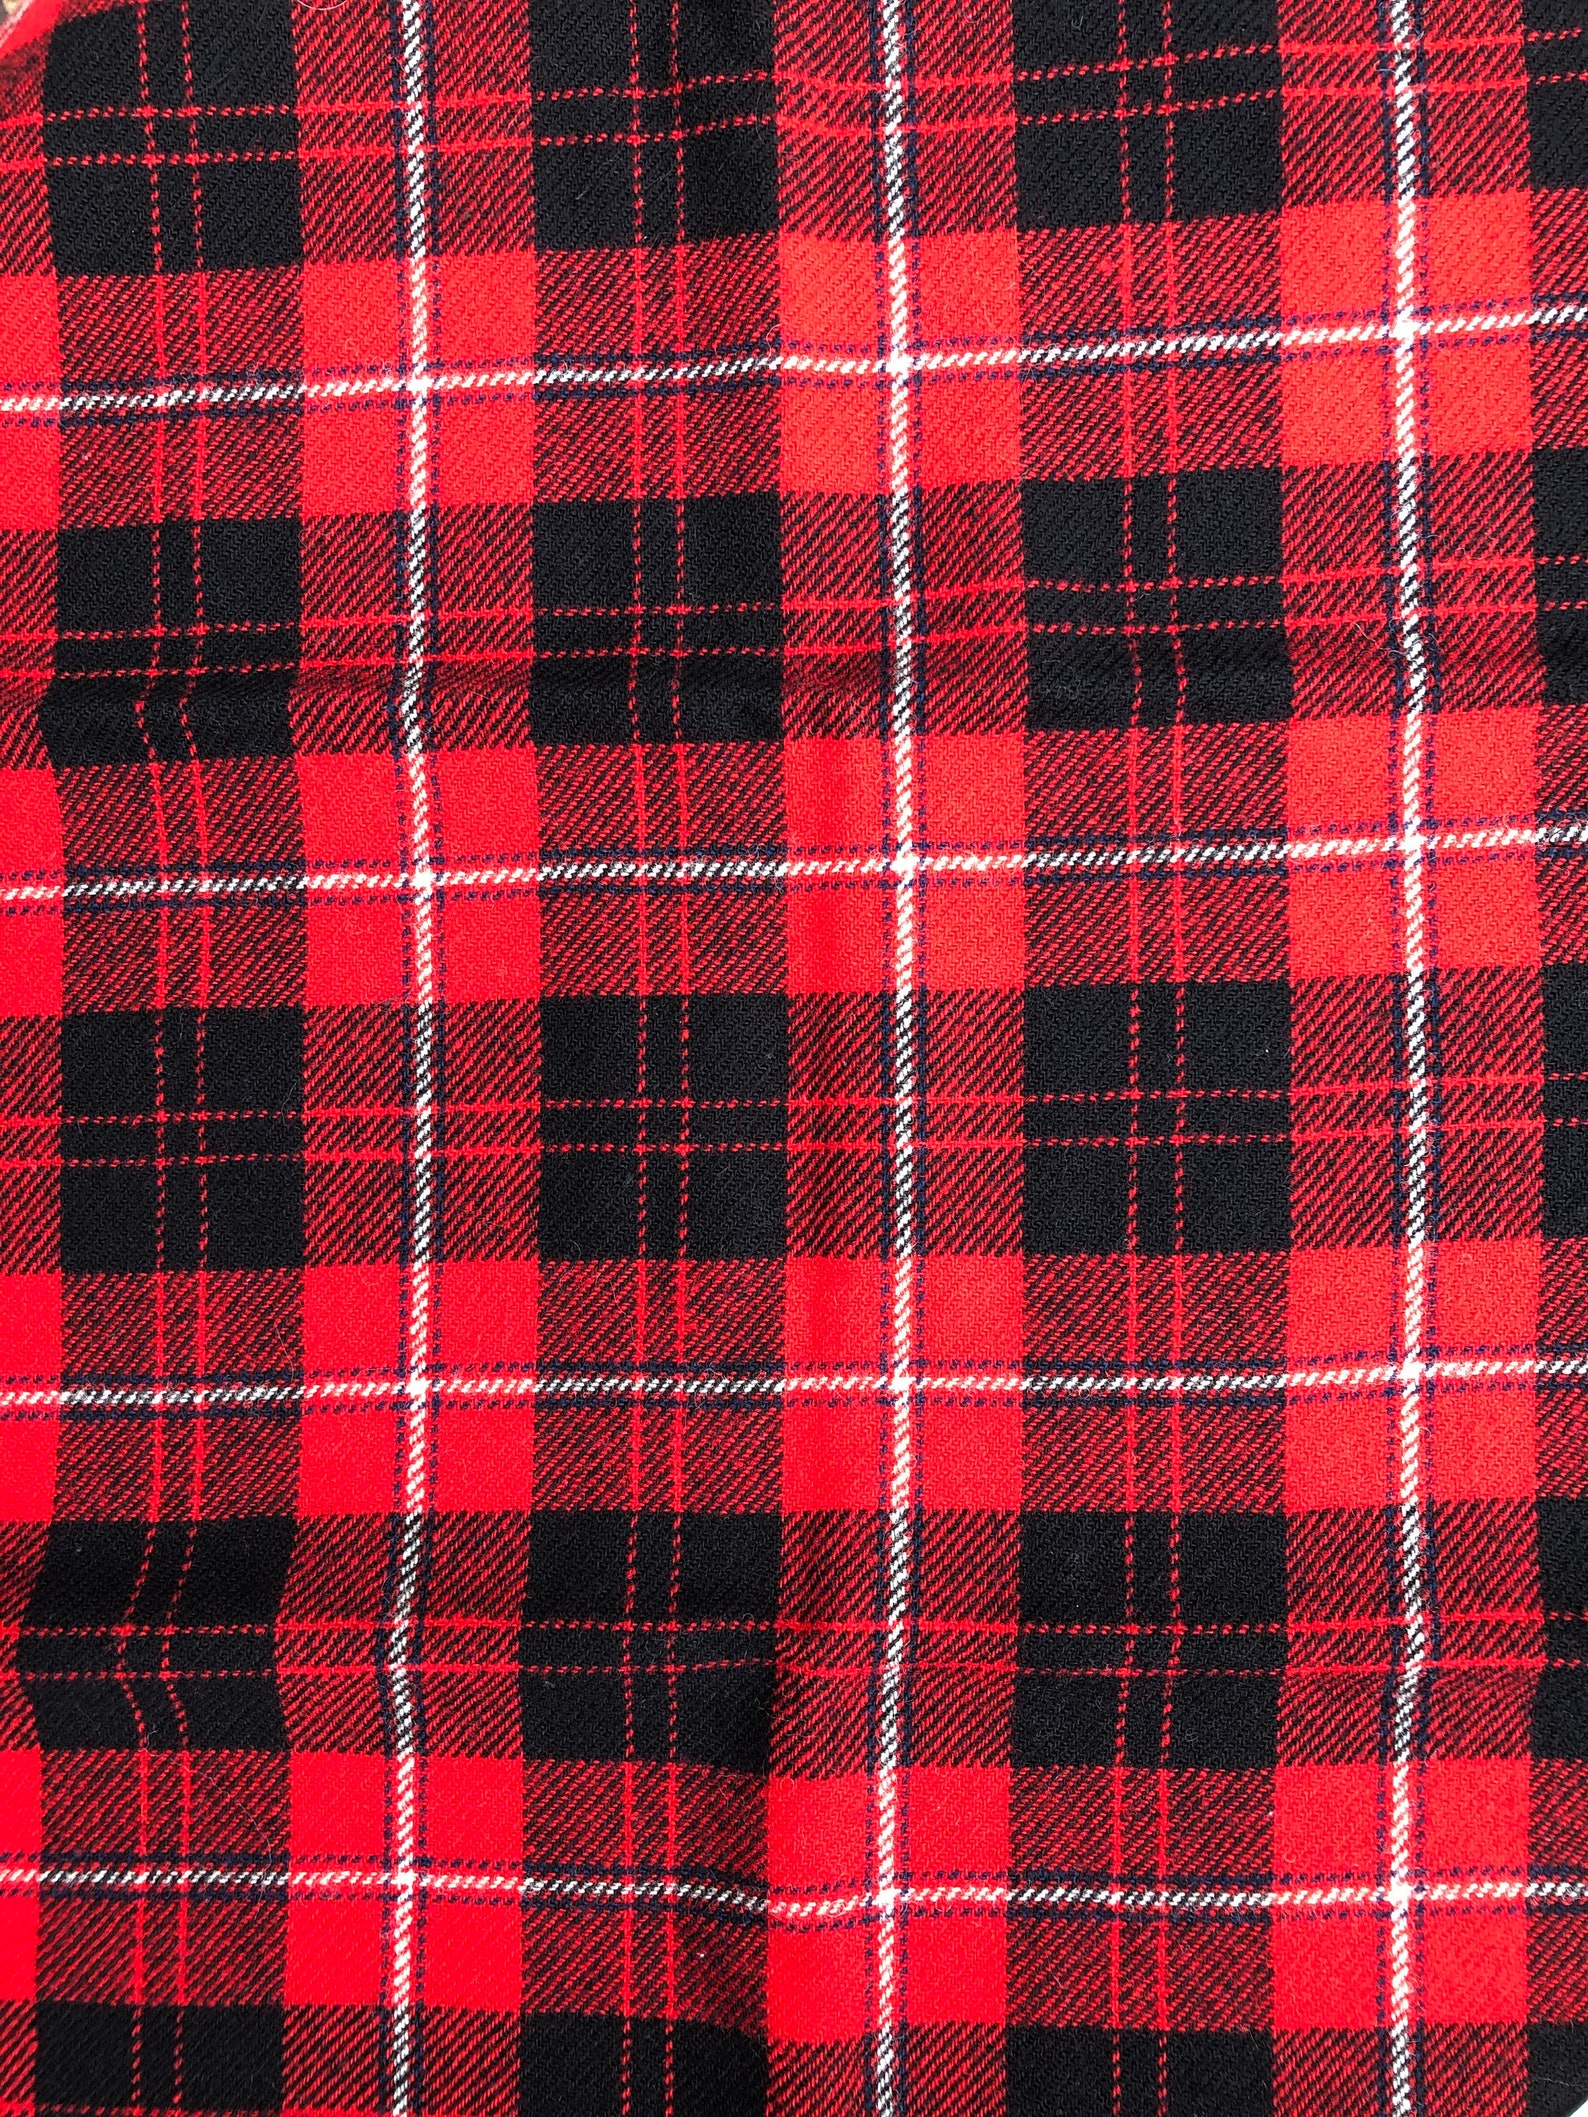 Red & Black Pendleton Plaid Wool Fabric | Etsy